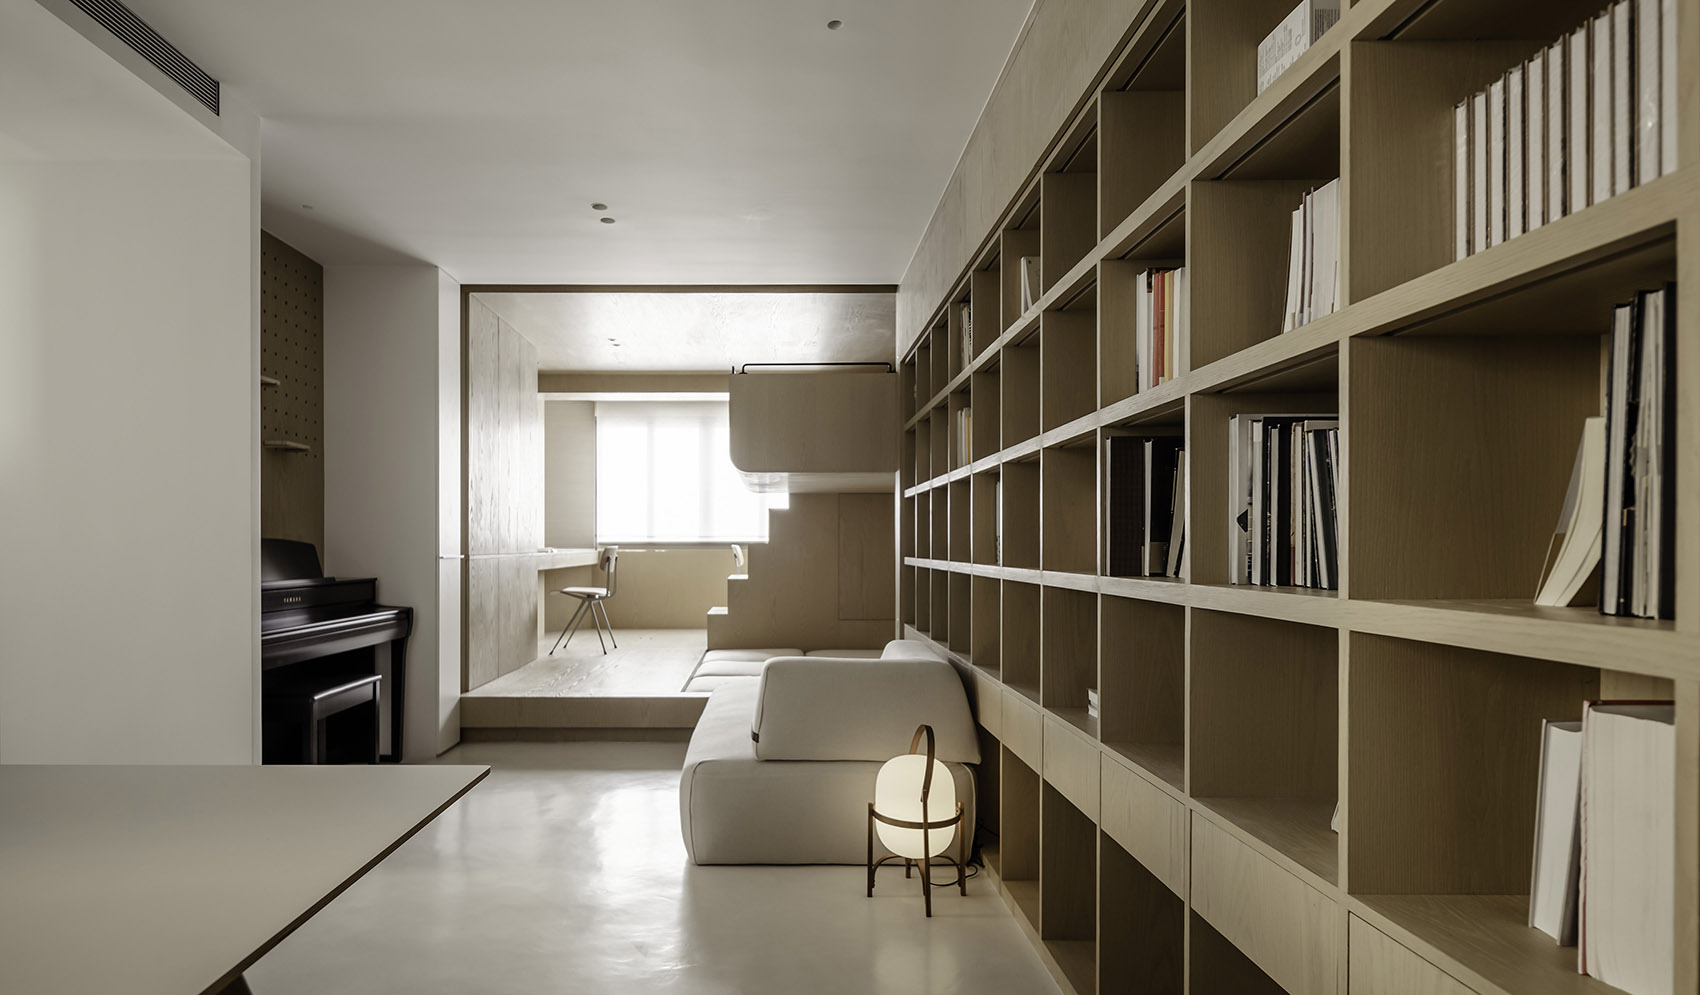 格 · 格物致知 & 50坪公寓室内改造，上海/做一个真正意义上的“物品之家”-6